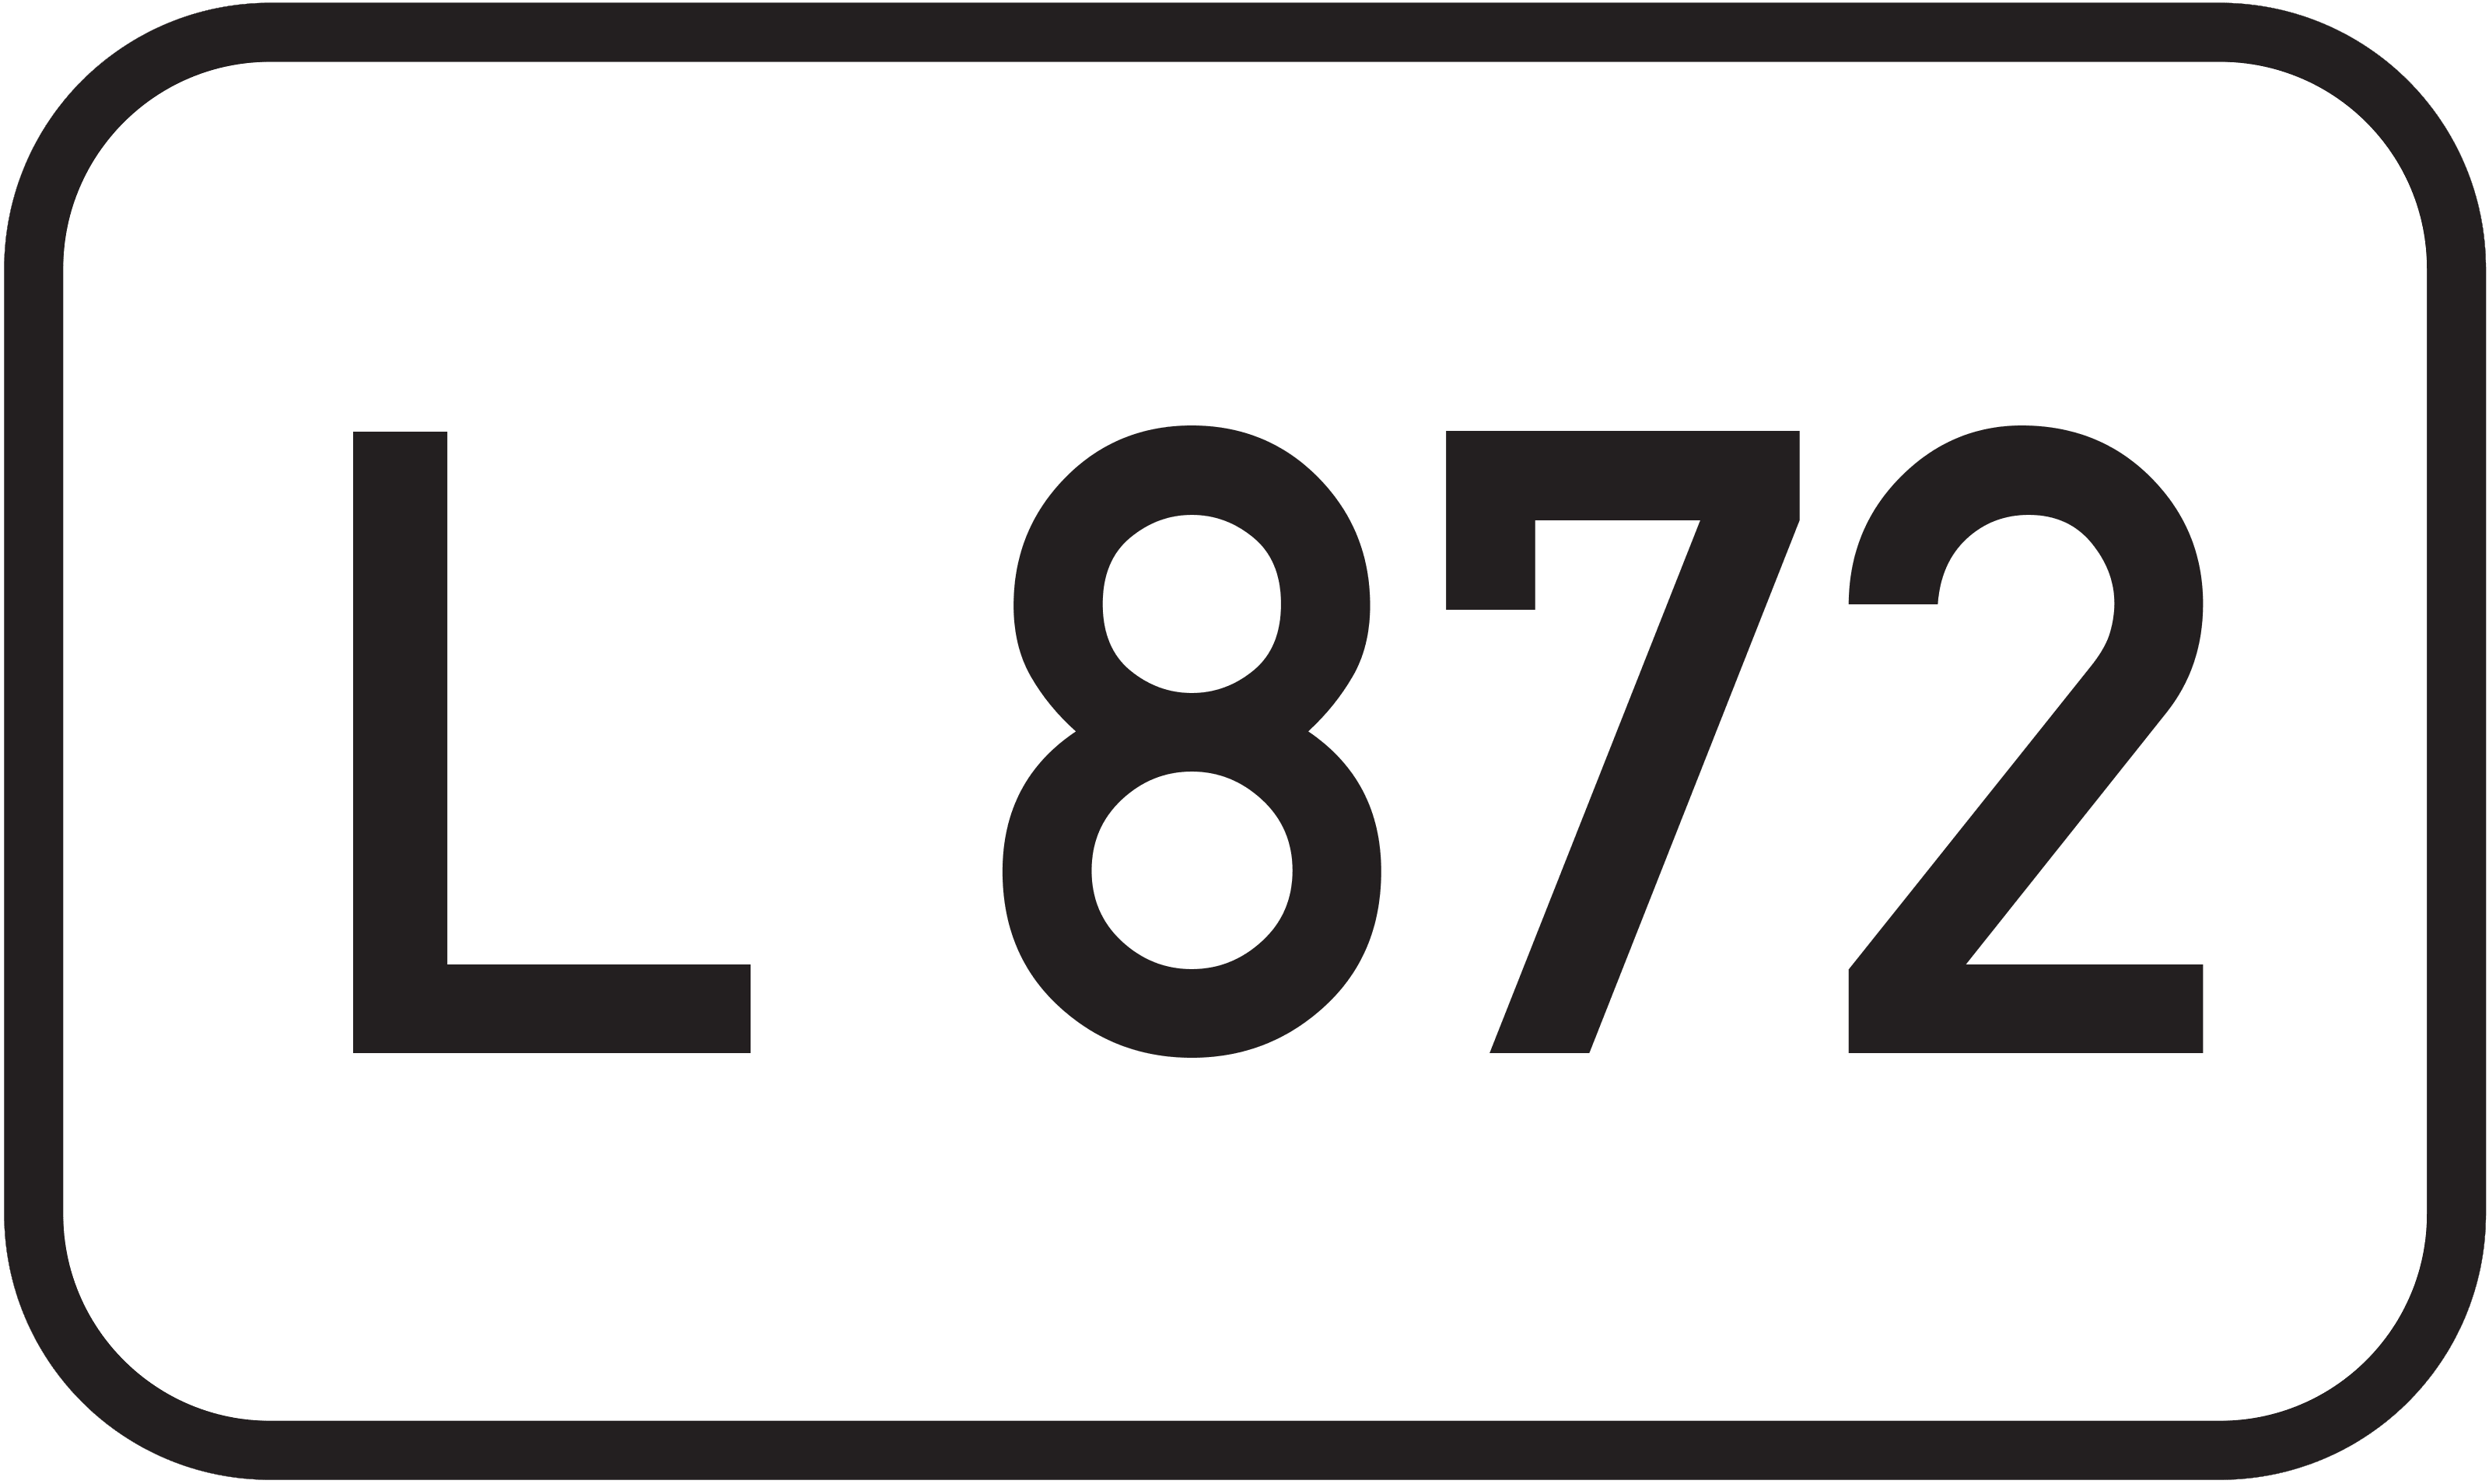 Landesstraße L 872